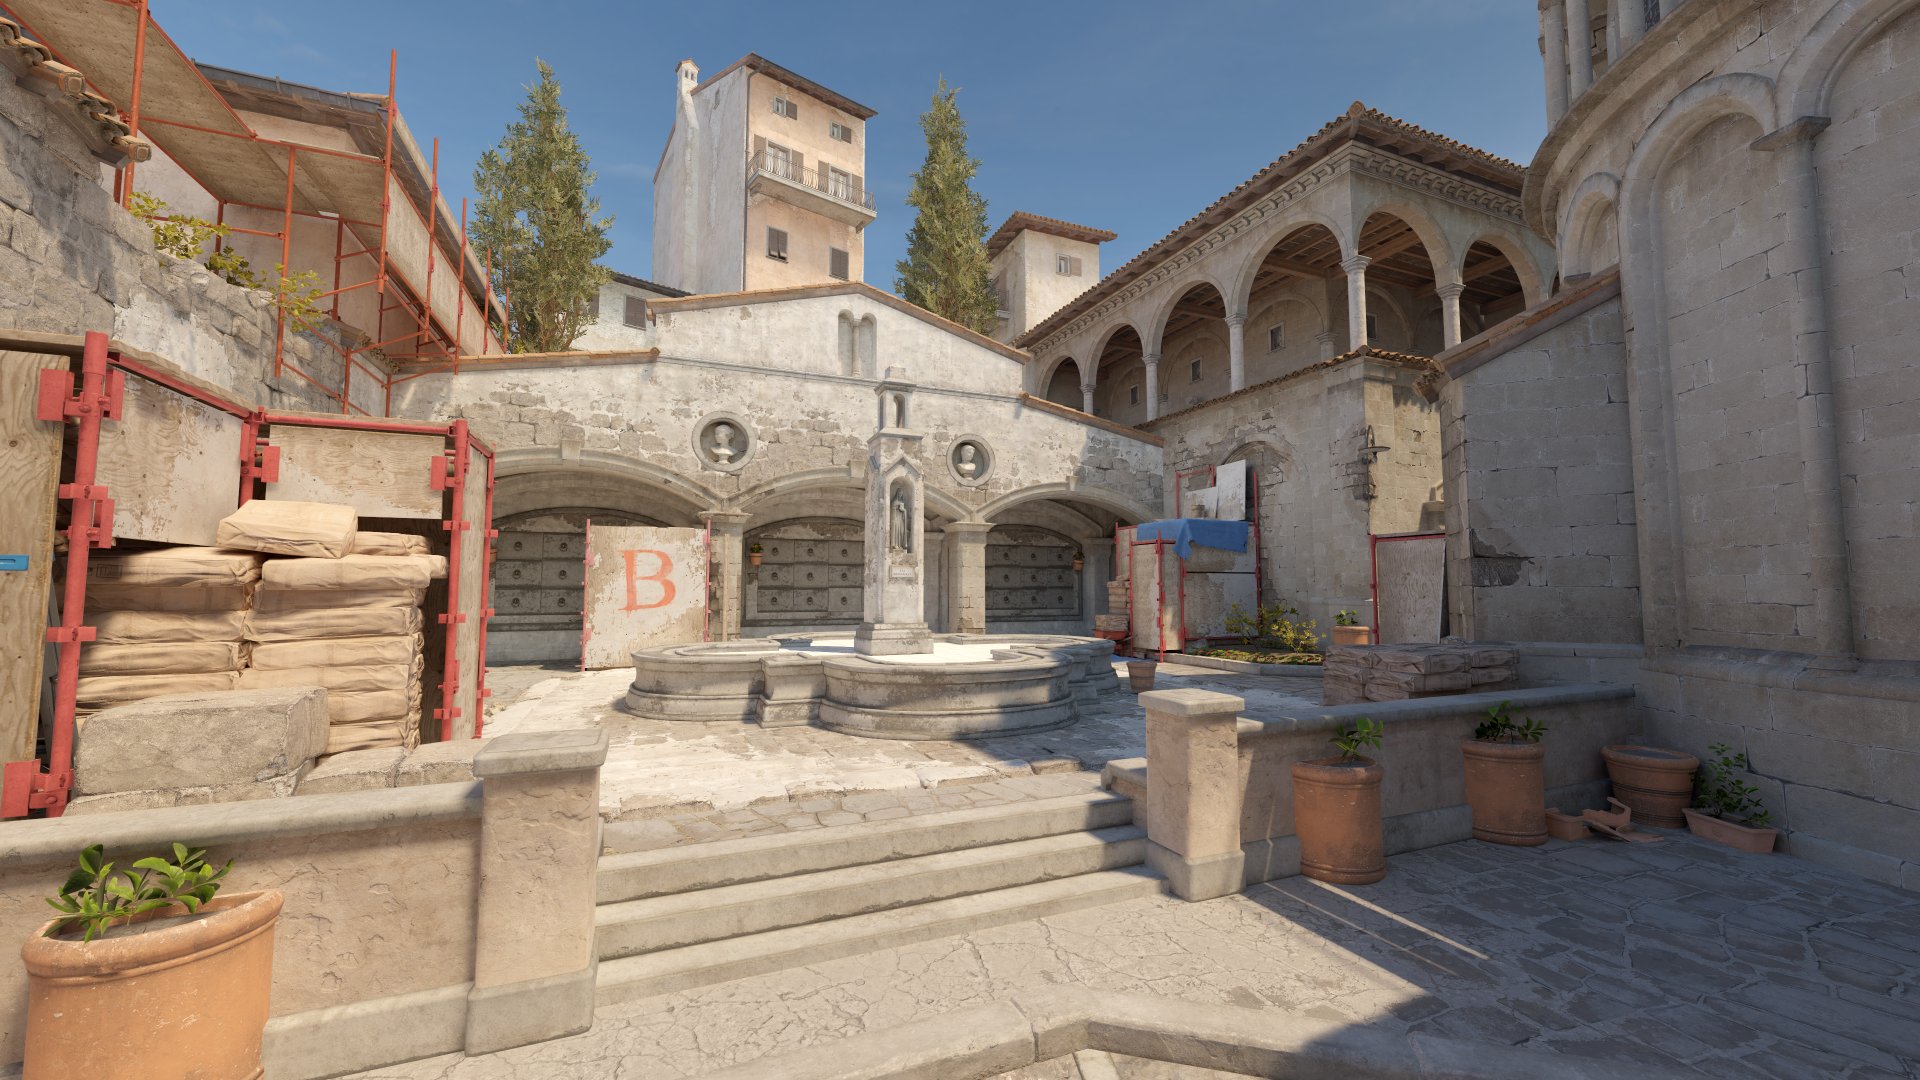 Do nada, Valve revela Counter-Strike 2 já com janela de lançamento